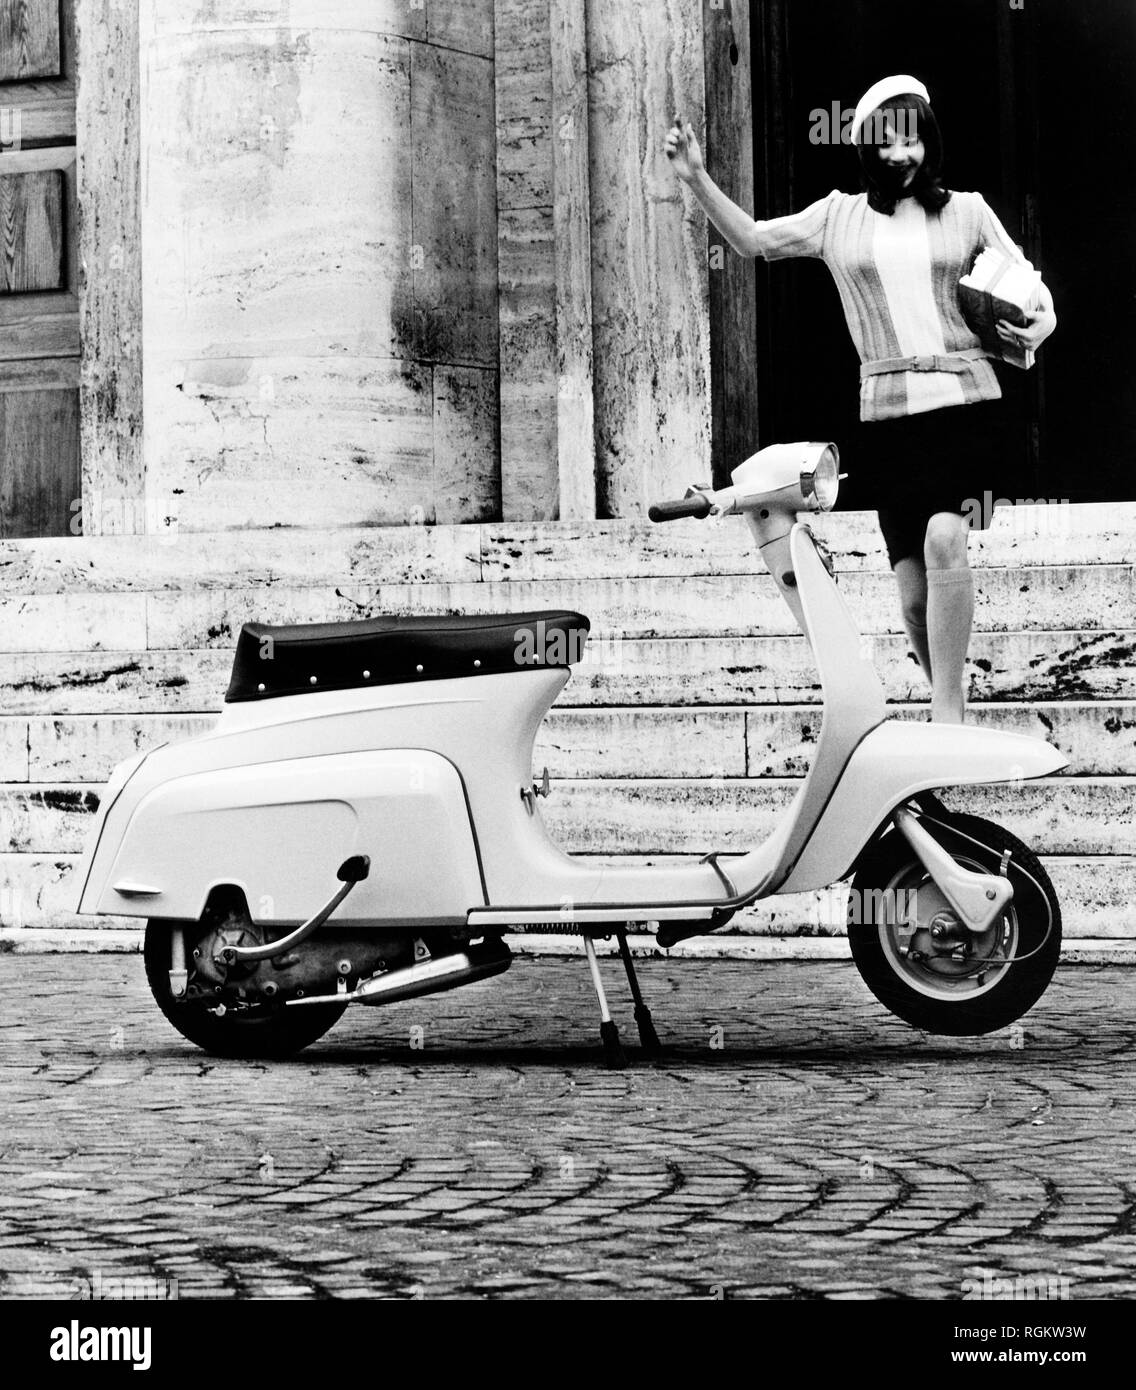 Lambretta, Italie, 1967 Banque D'Images